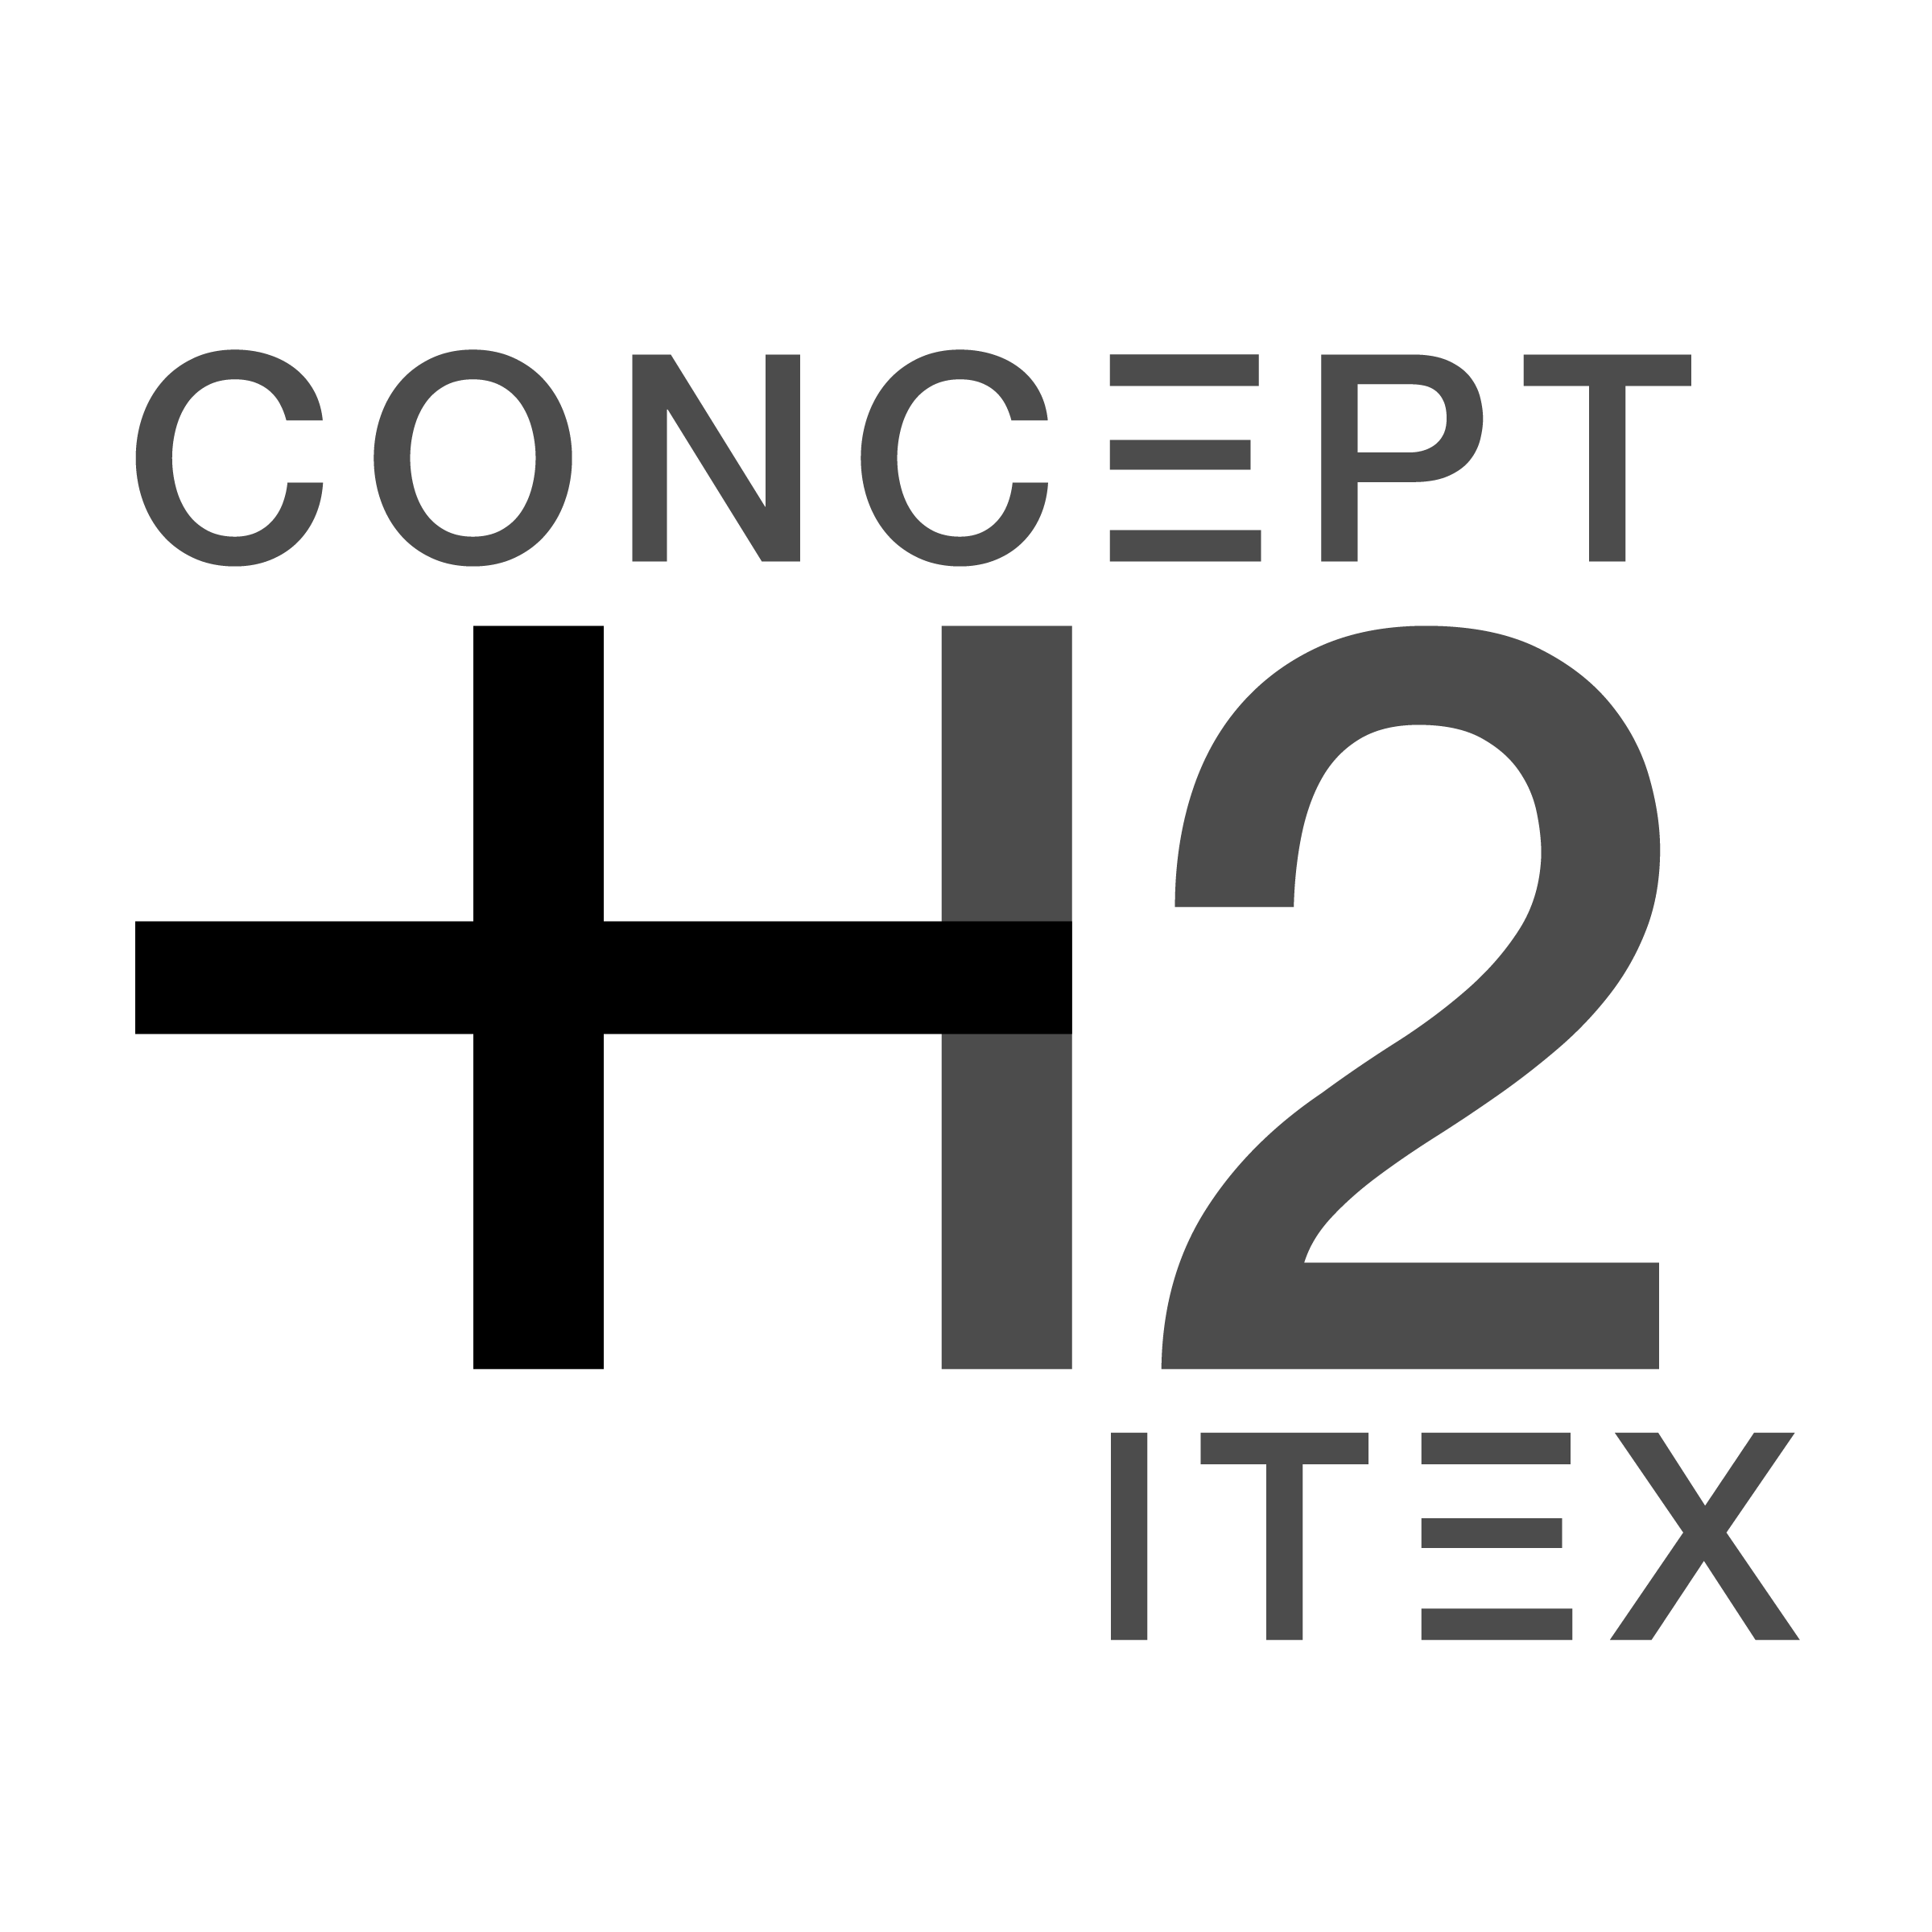 ConceptH2Itex_Logo.png